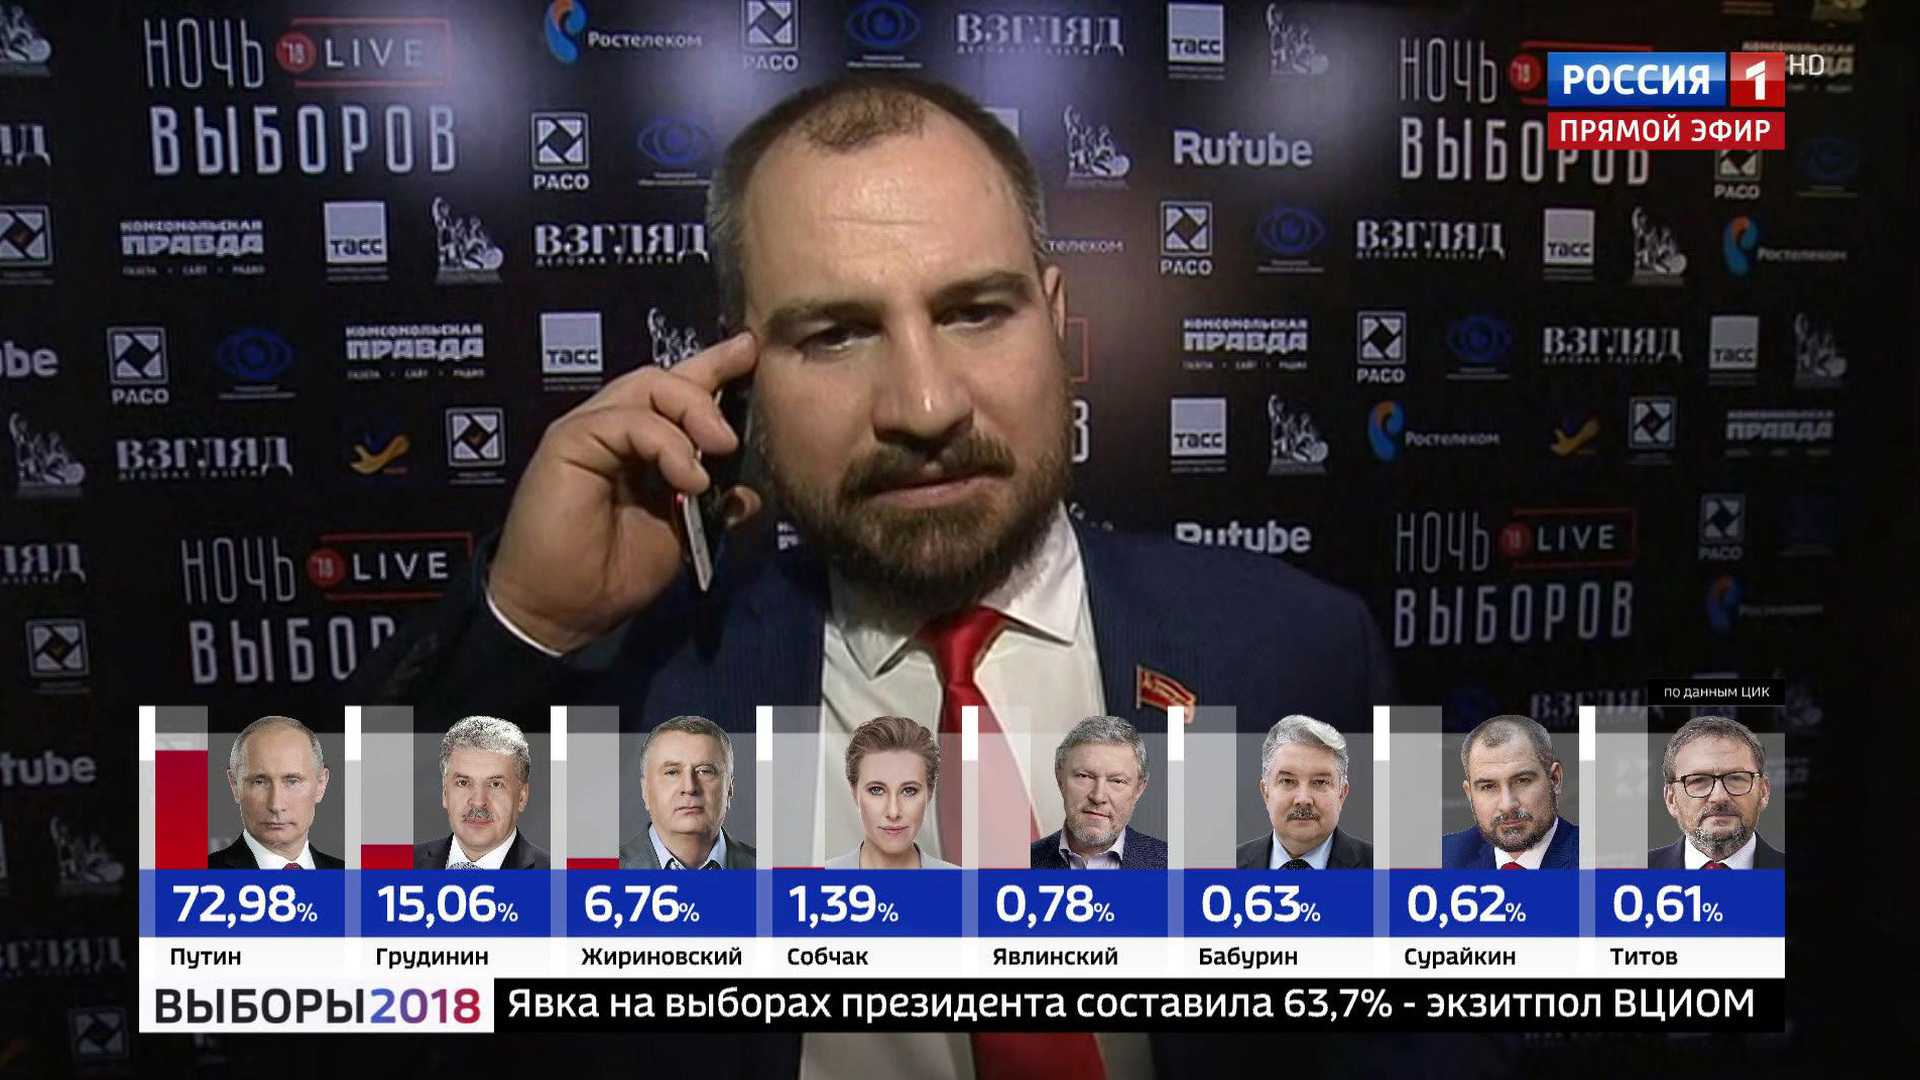 Кандидаты в президенты россии на выборах 2018 года